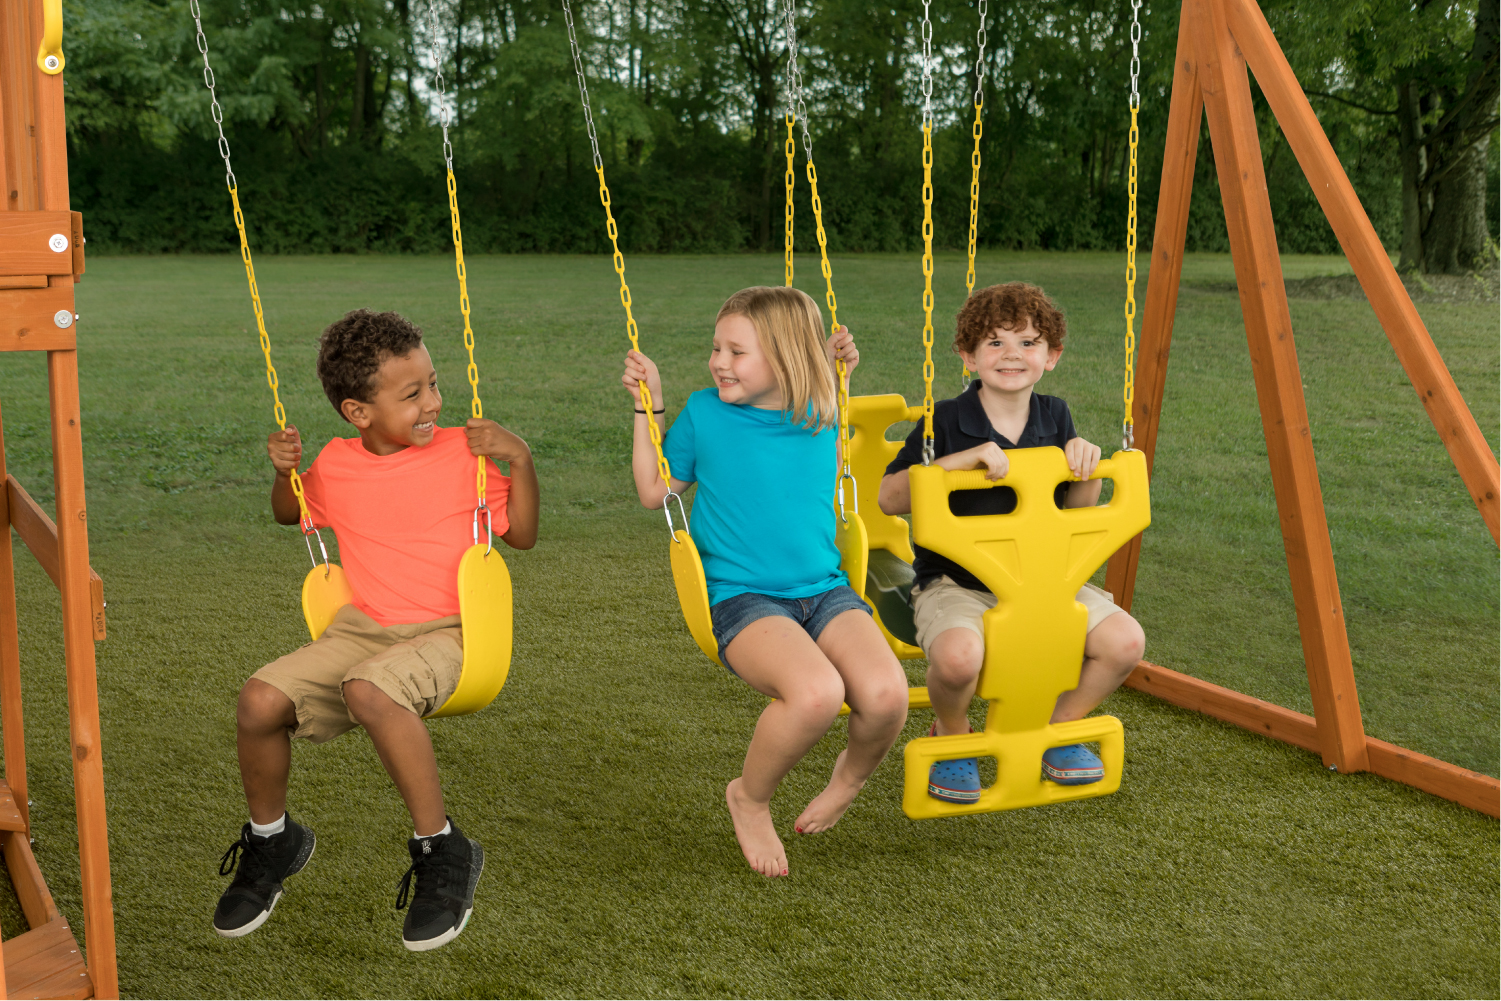 Sky View Cedar Backyard Playset | W: 17'10" D: 9'4" H: 9'9" | w/2-Person Glider & 2 Belt Swings | Binoculars, Steering Wheel & Telescope | Kids Age 3-12 | ASTM Standards | 10-Year Warranty on Wood - image 3 of 13